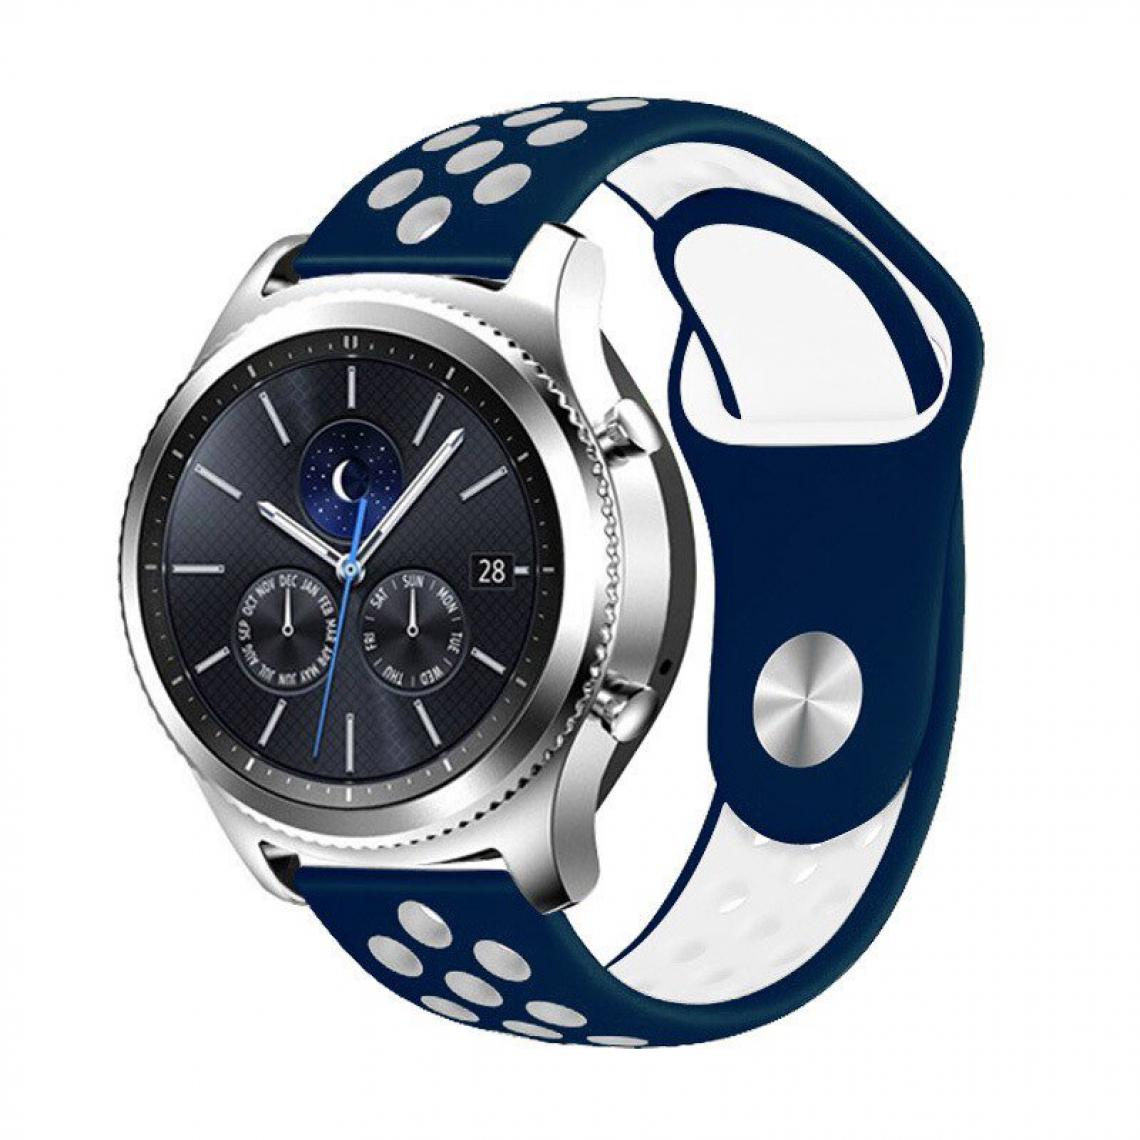 Phonecare - Bracelet SportyStyle pour Garmin Fenix 6 Solar - 47mm - Bleu foncé / Blanc - Autres accessoires smartphone